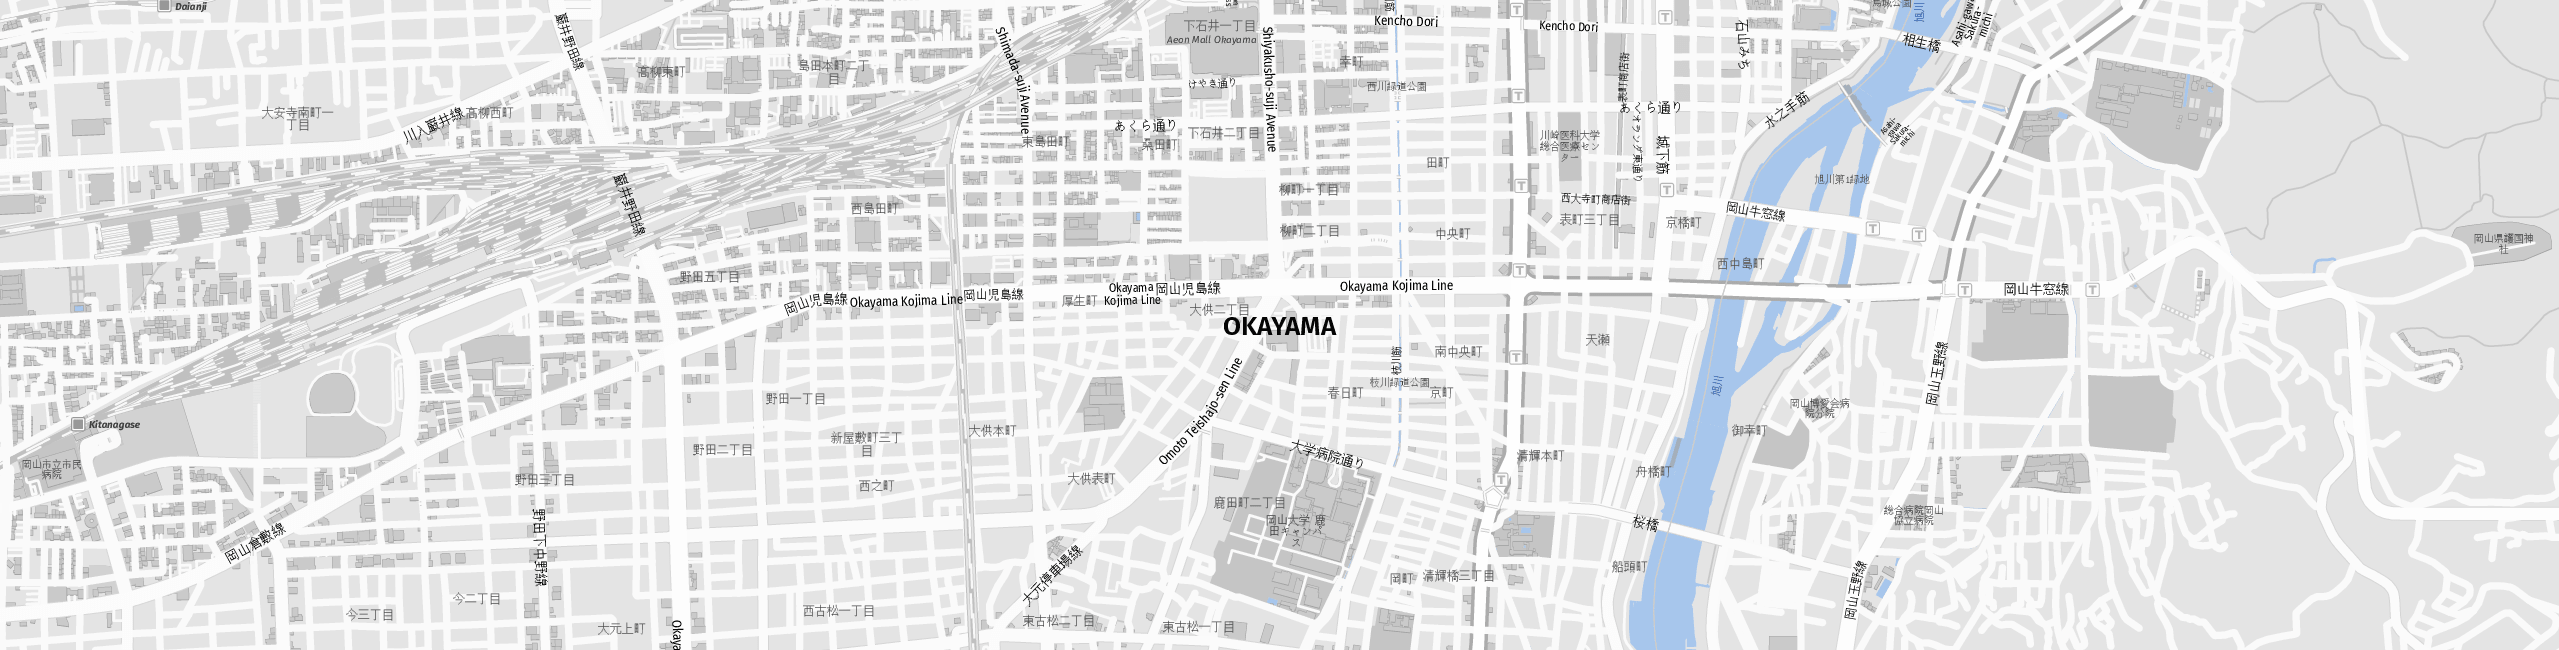 Stadtplan Okayama zum Downloaden.